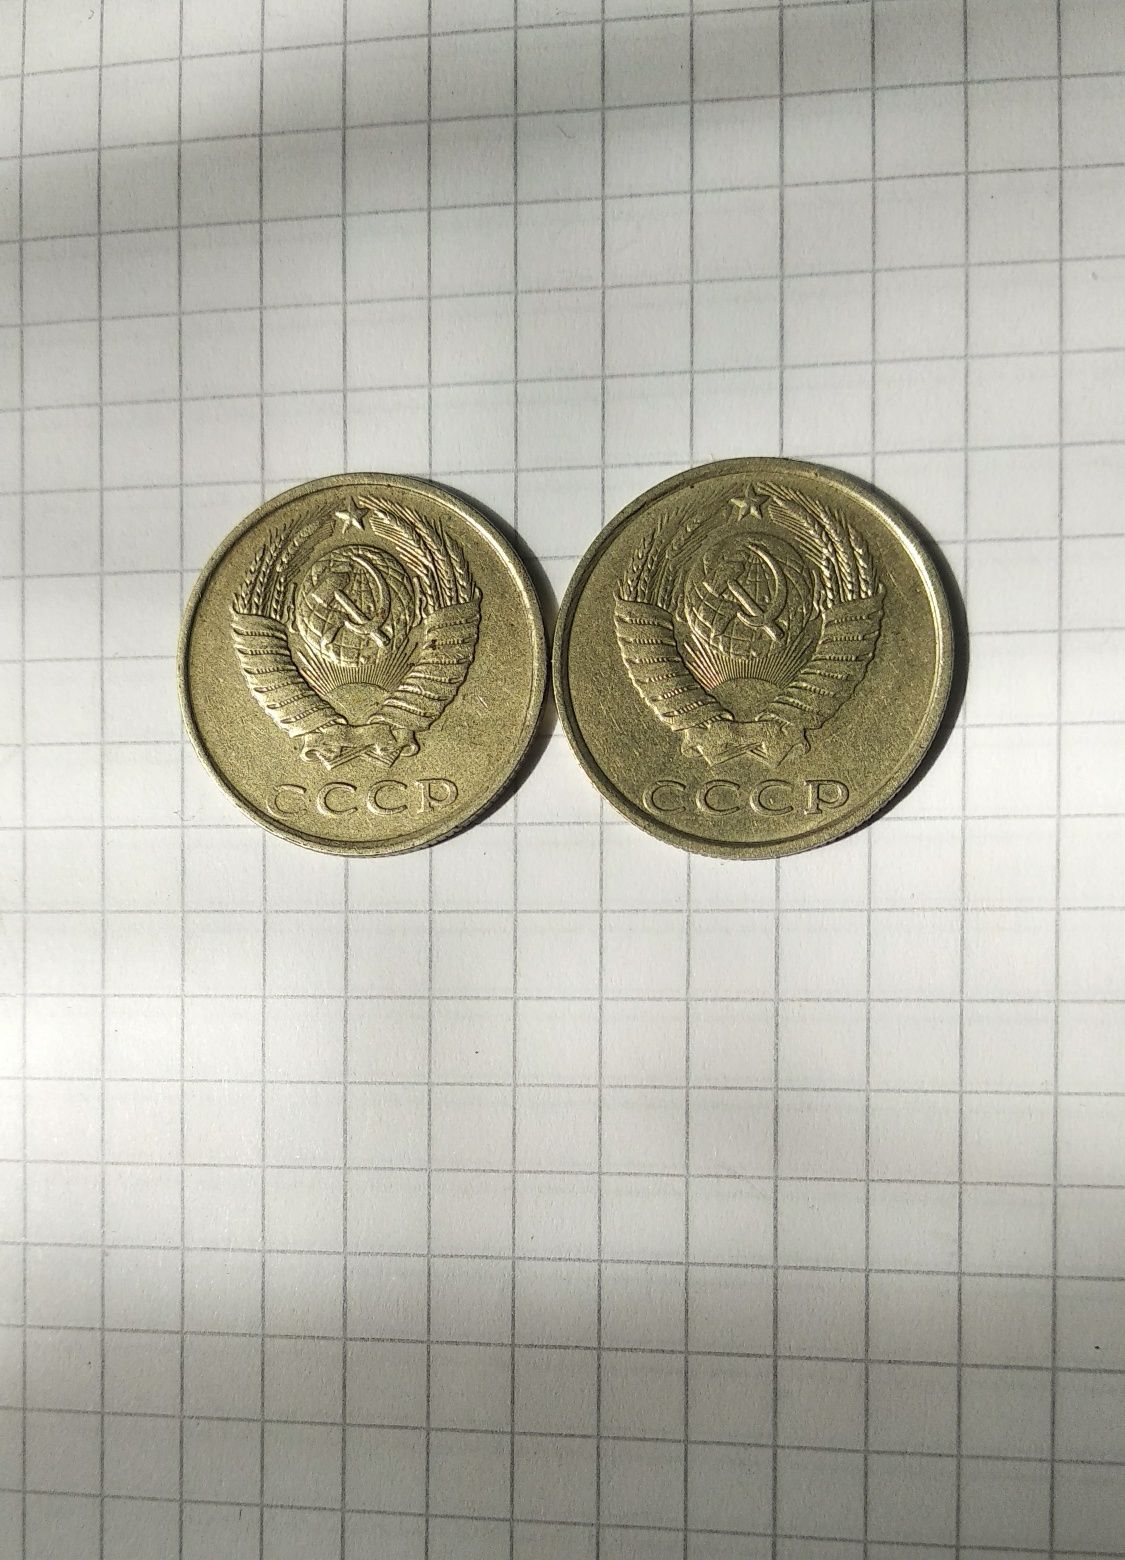 Монеты 20 копеек СССР. 1989 и 1990г. Не чищены.За обе